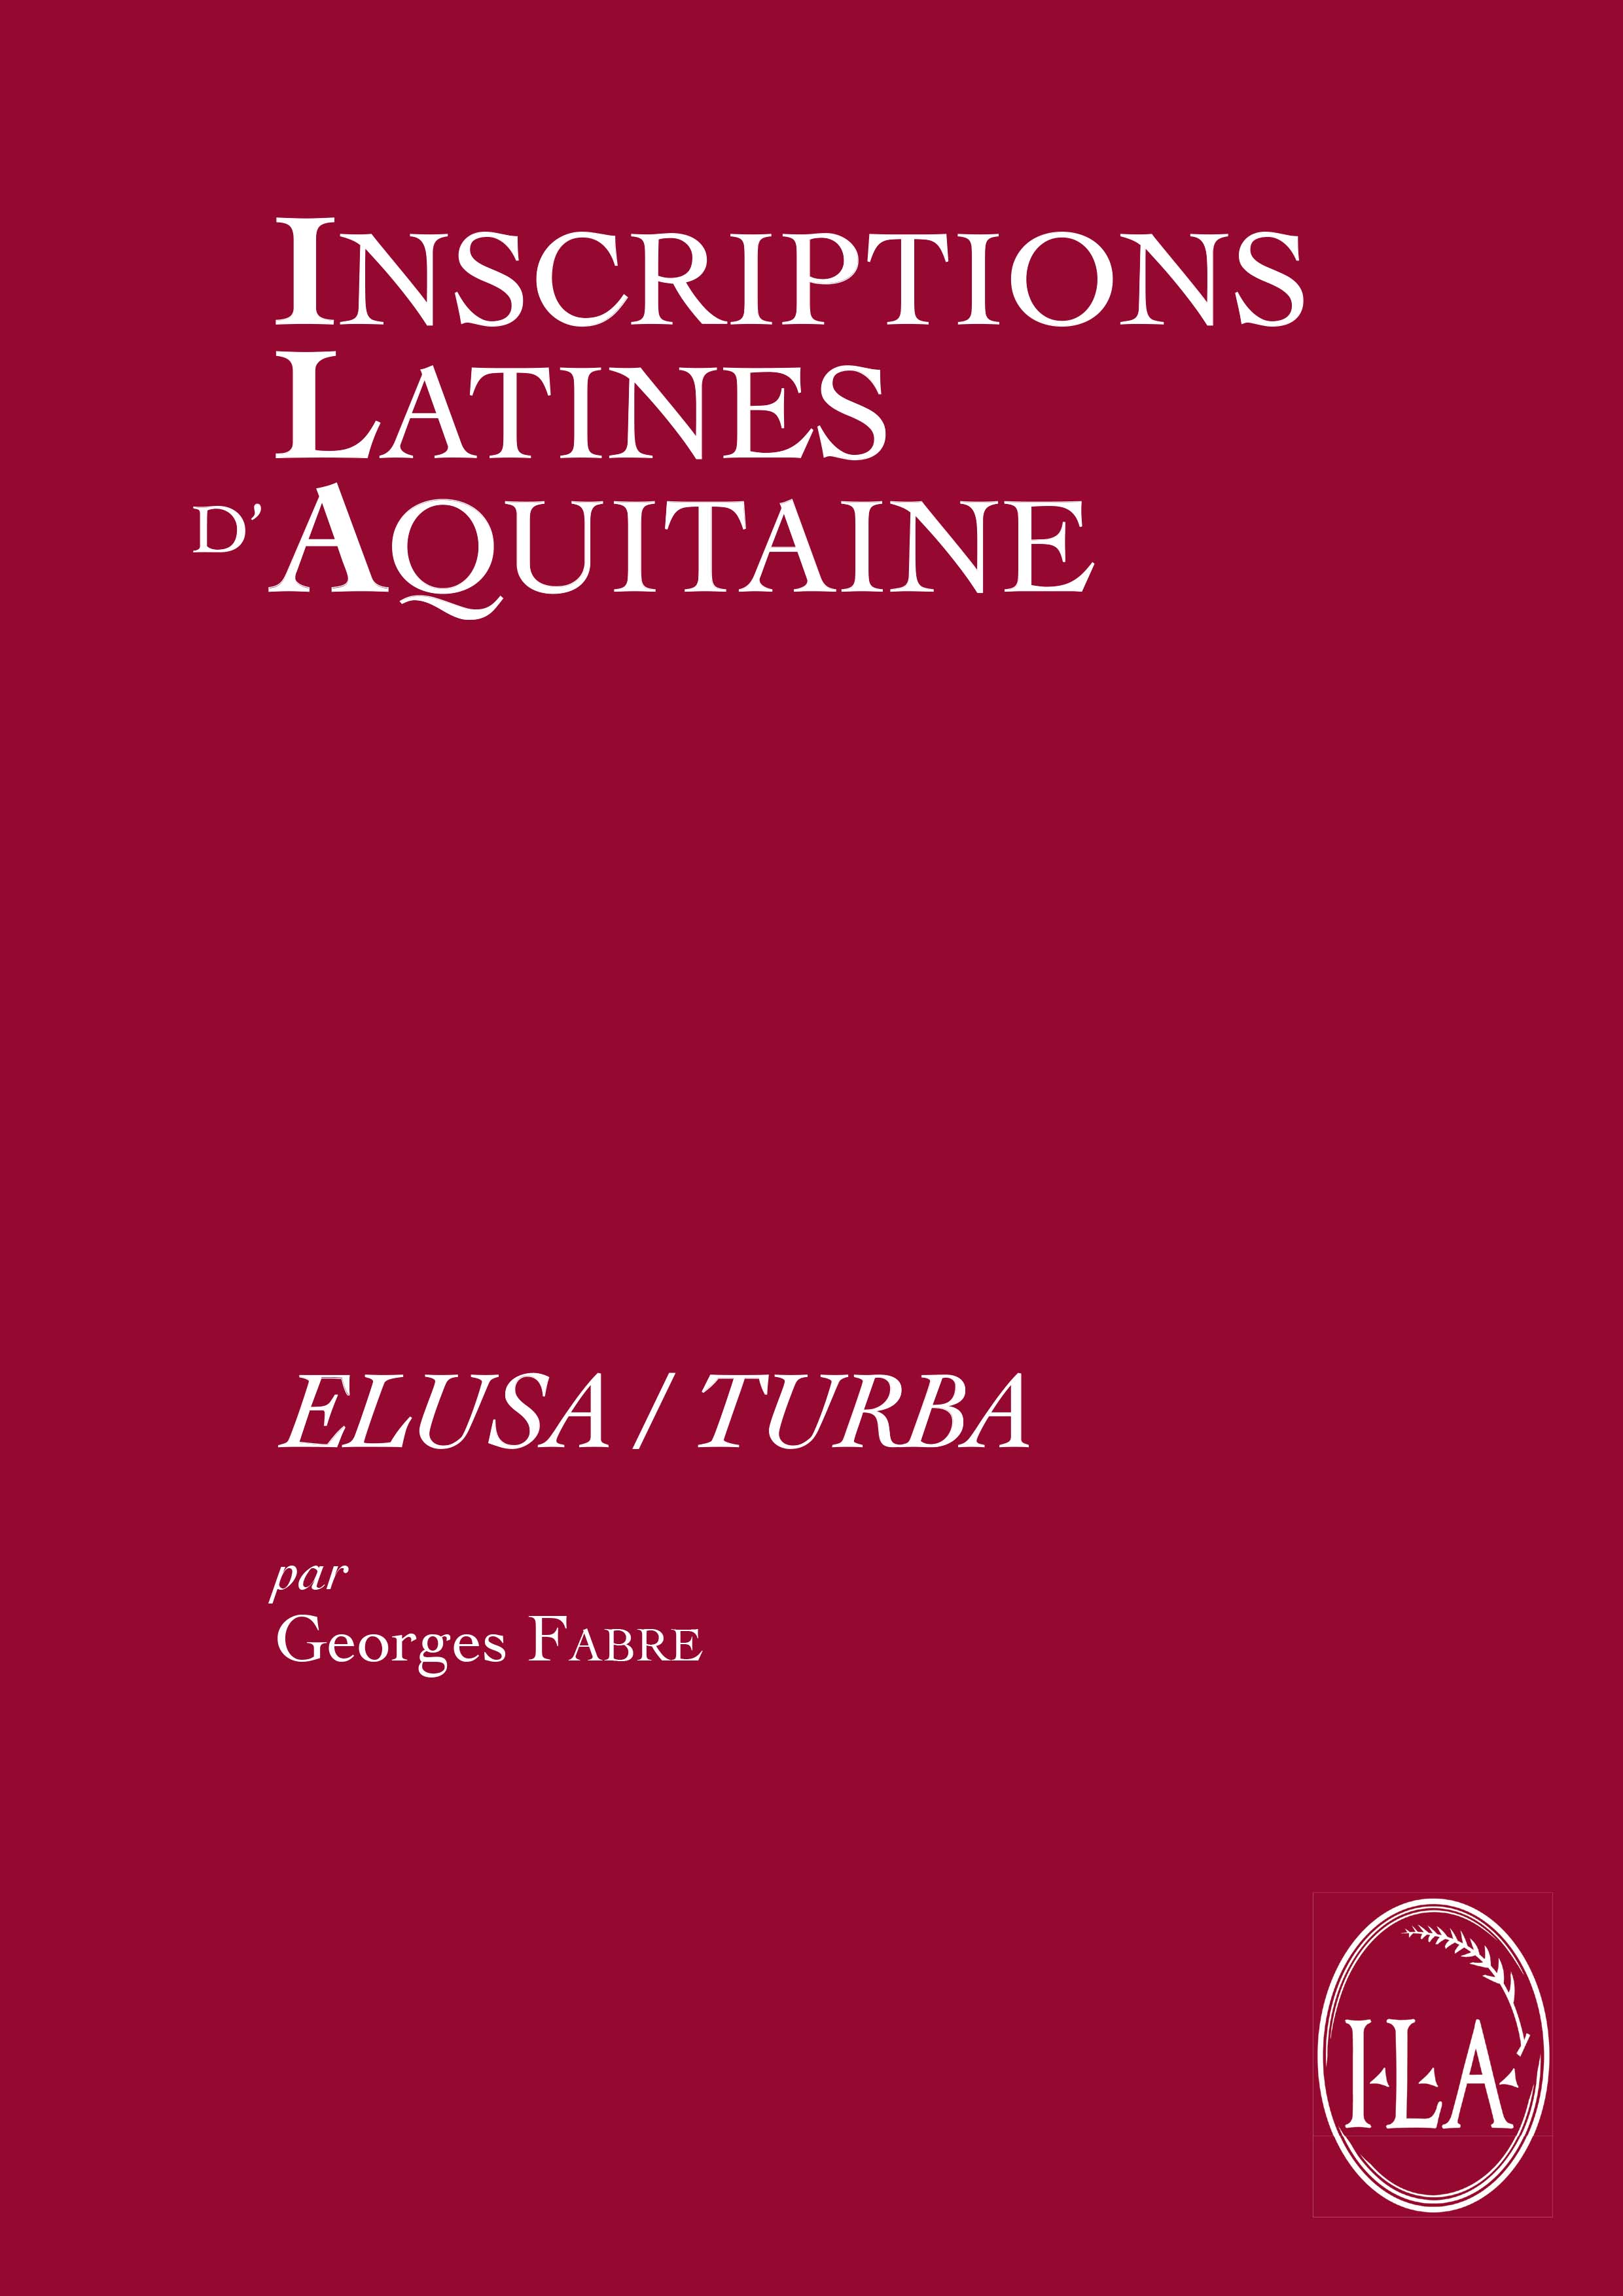 Elusa/ Turba, (Inscriptions latines d'Aquitaine vol. 10), 2018, 222 p.